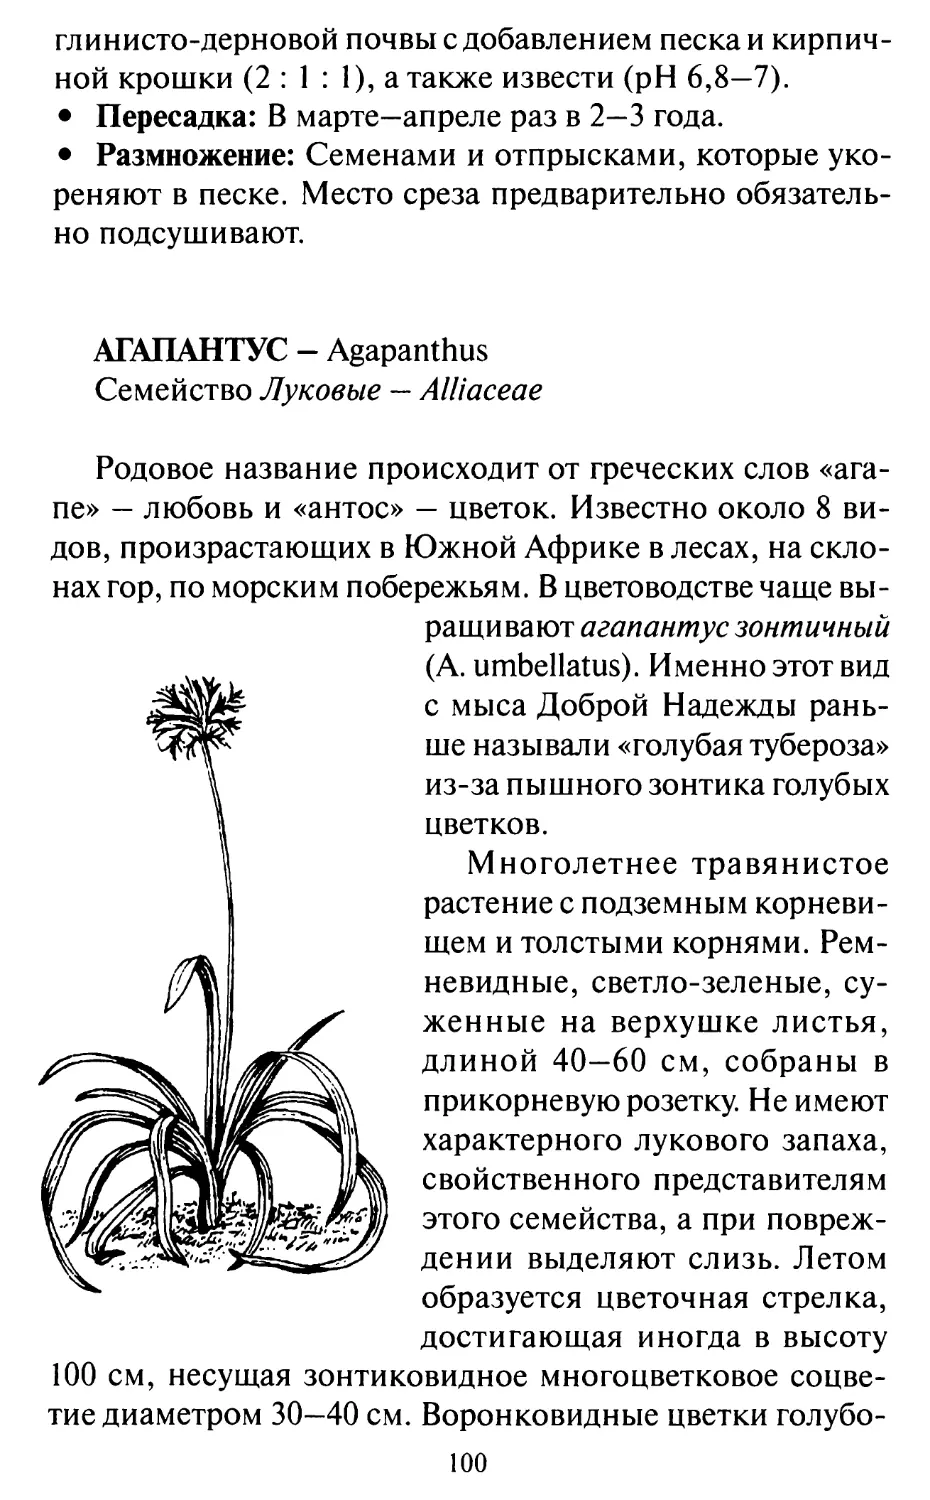 Агапантус - Agapanthus